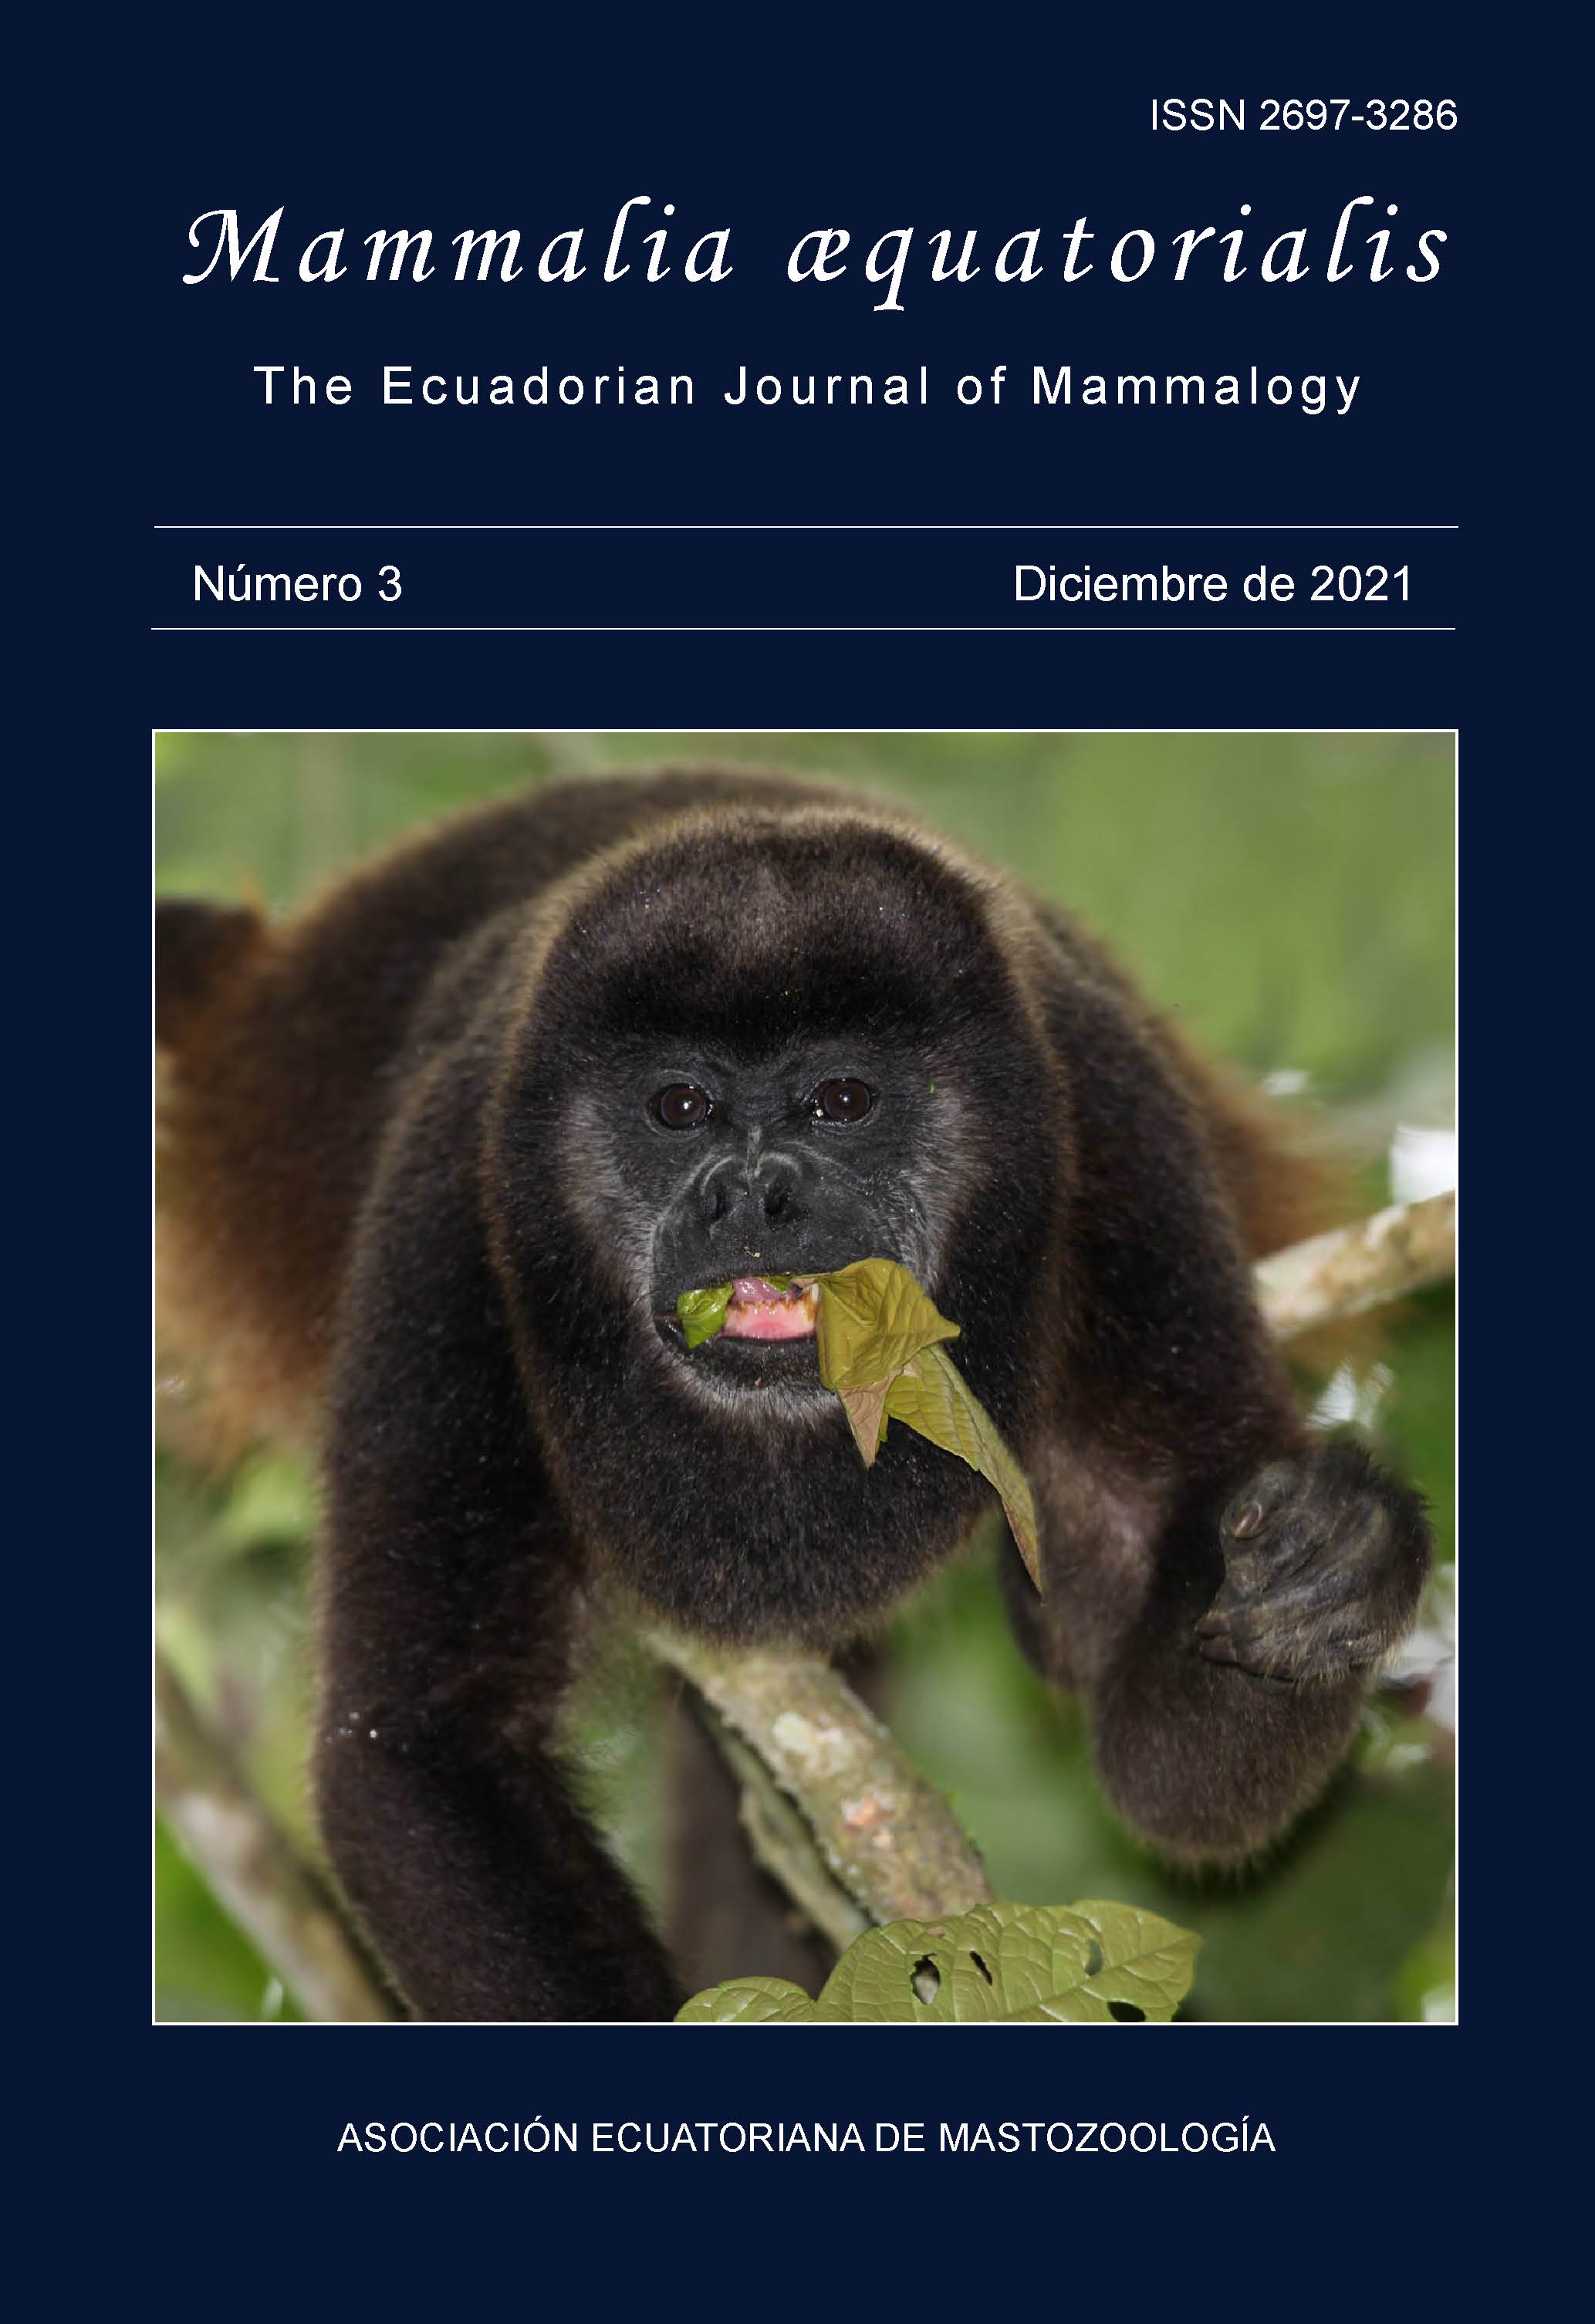 Mono aullador de manto dorado (Alouatta palliata) en provincia de Manabí, Ecuador